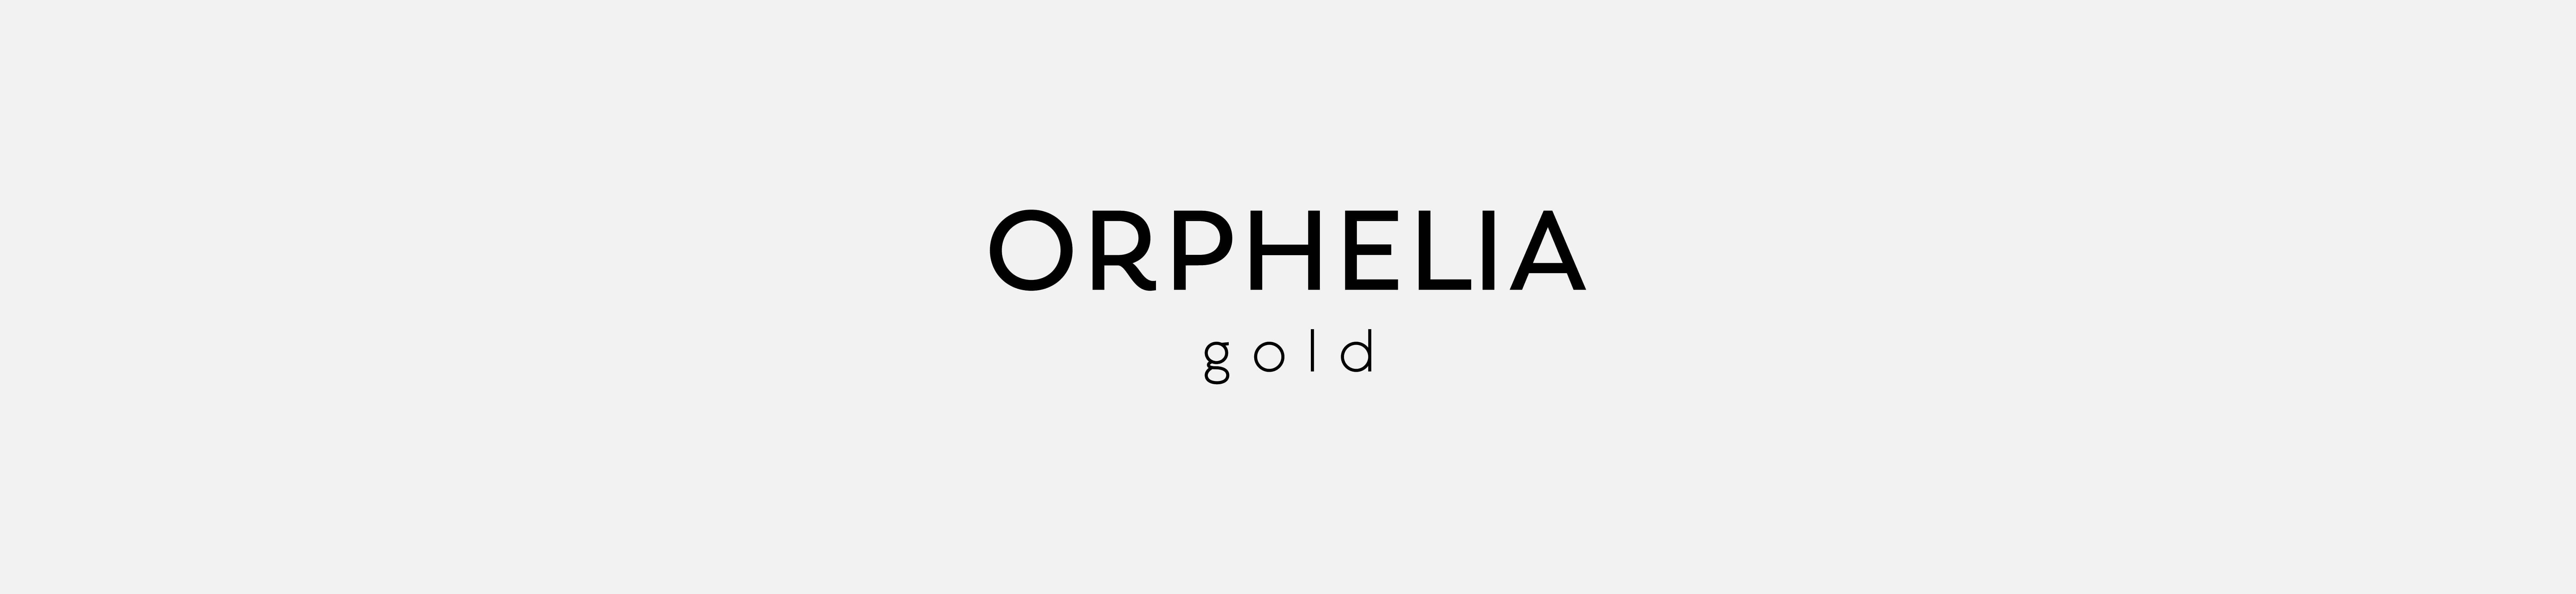 Orphelia Gold